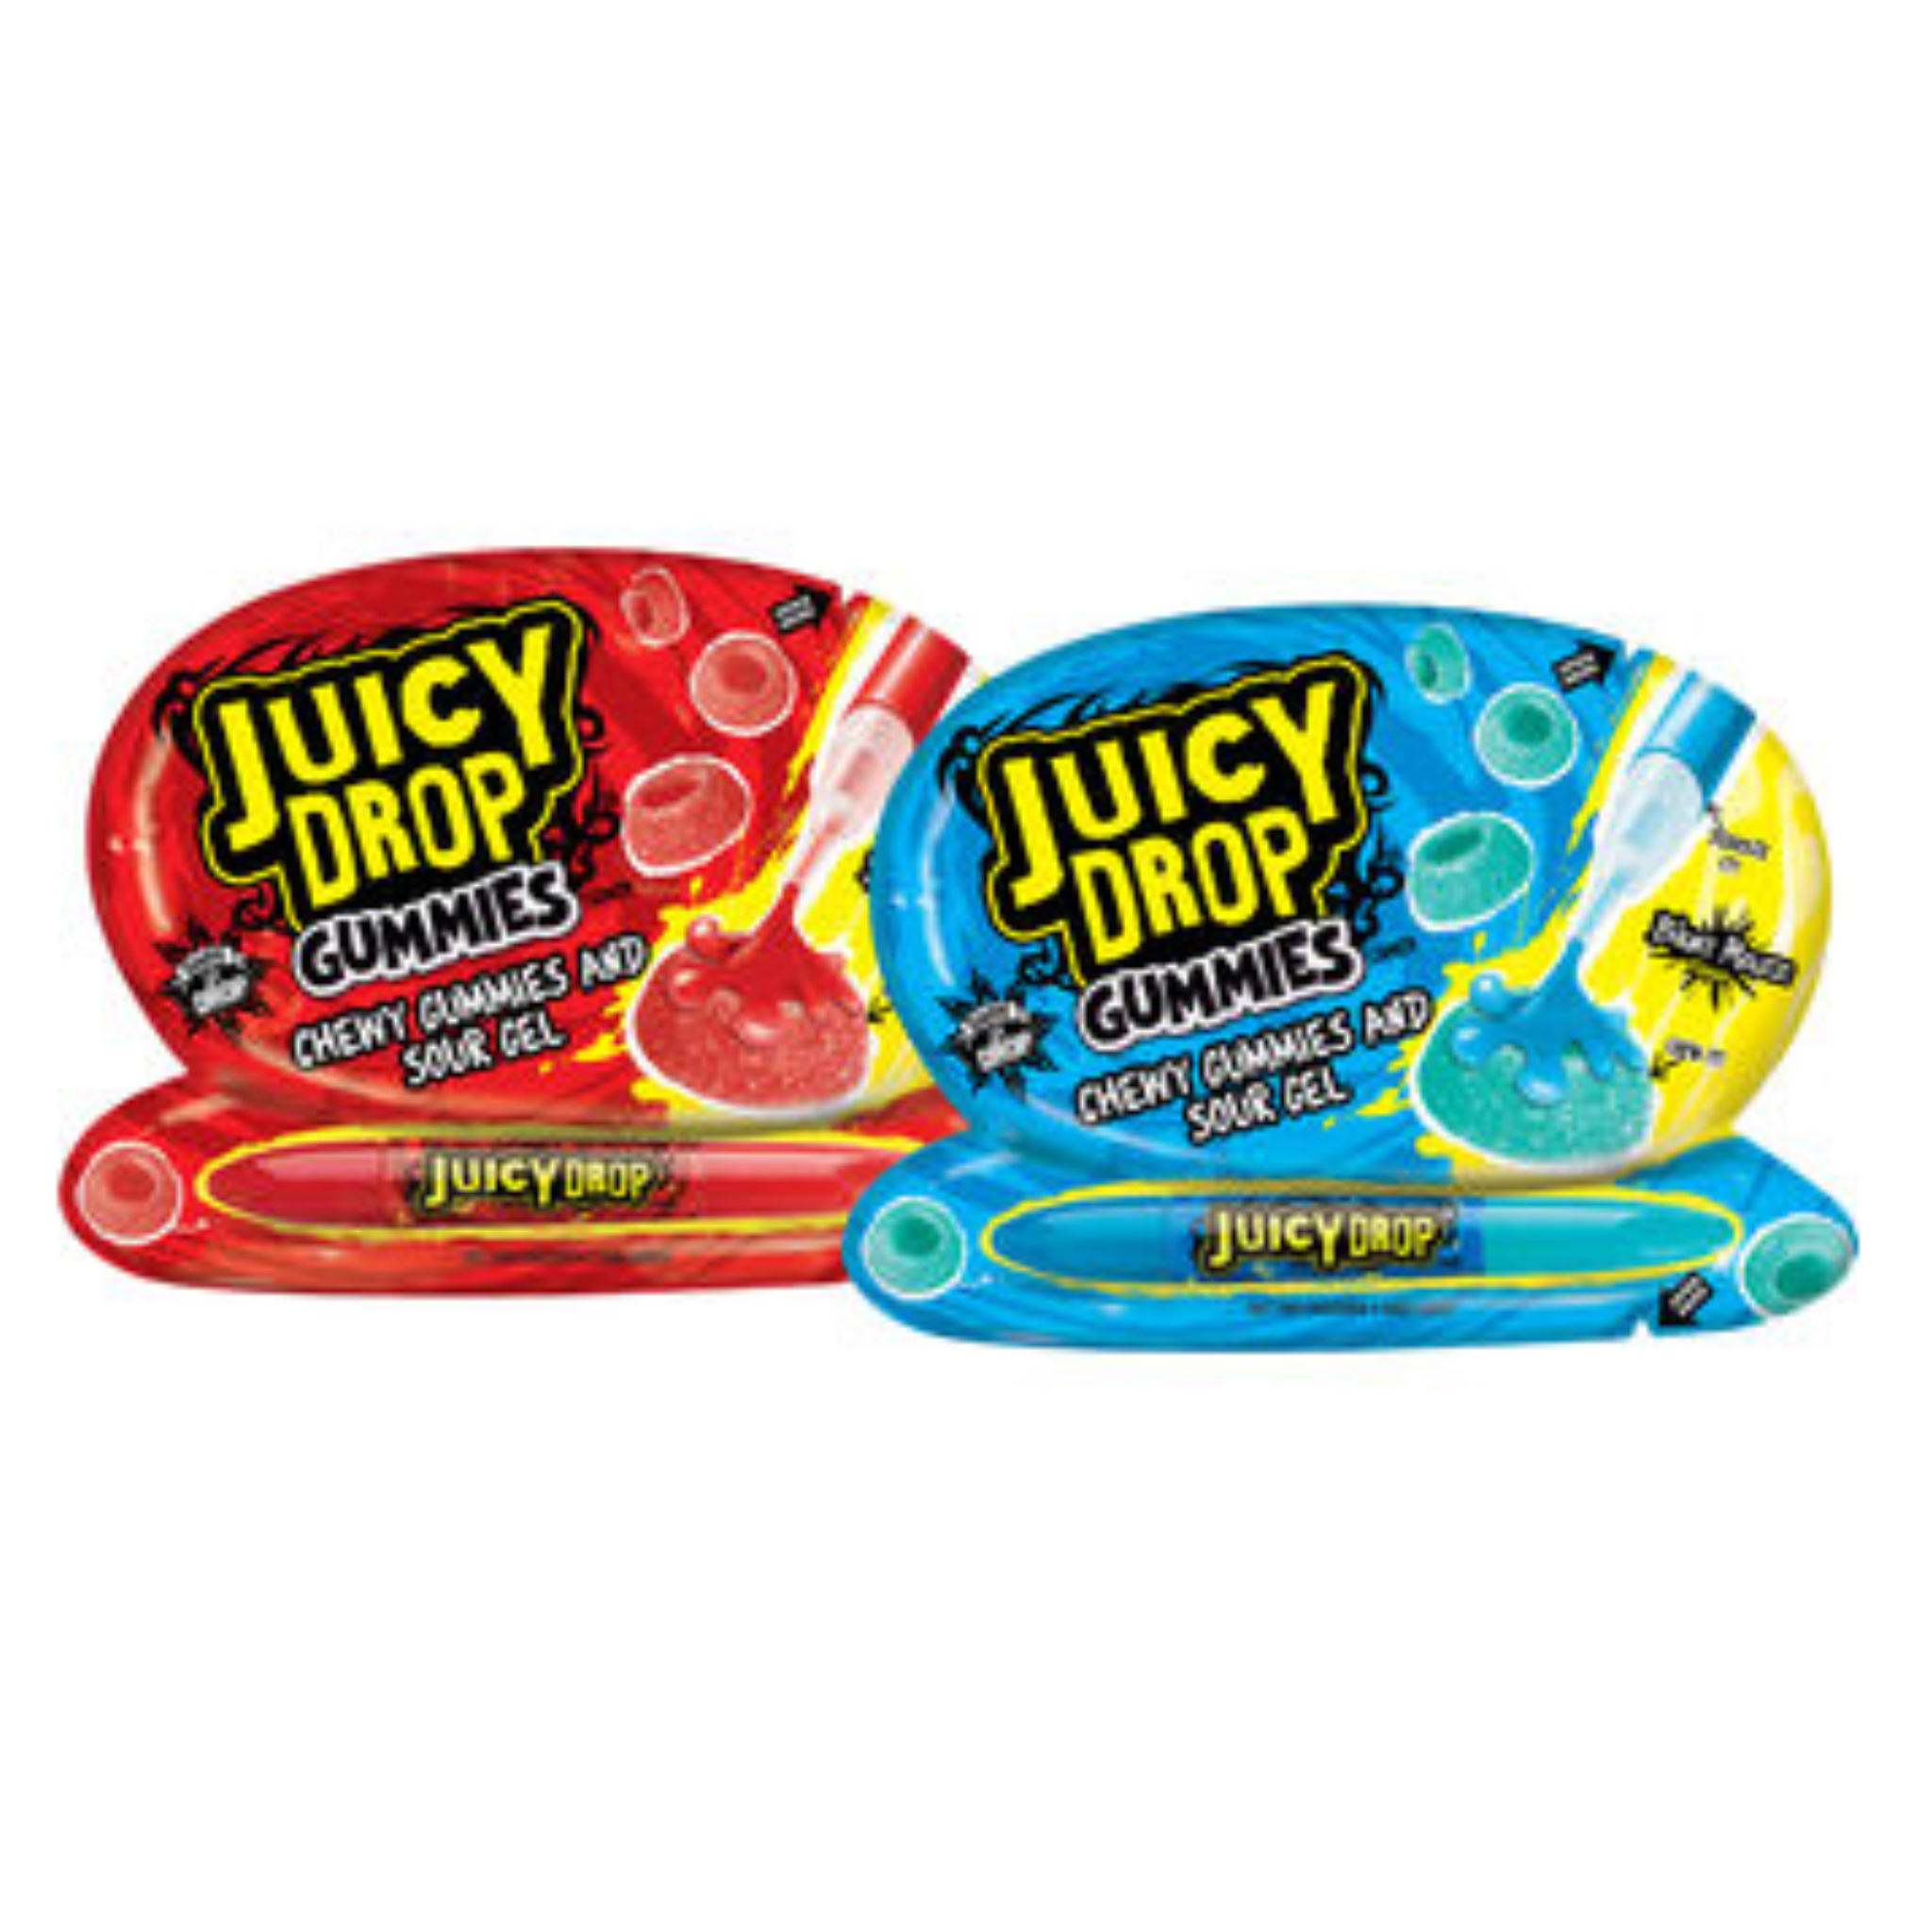 Bazooka juicy drop gummies bundel